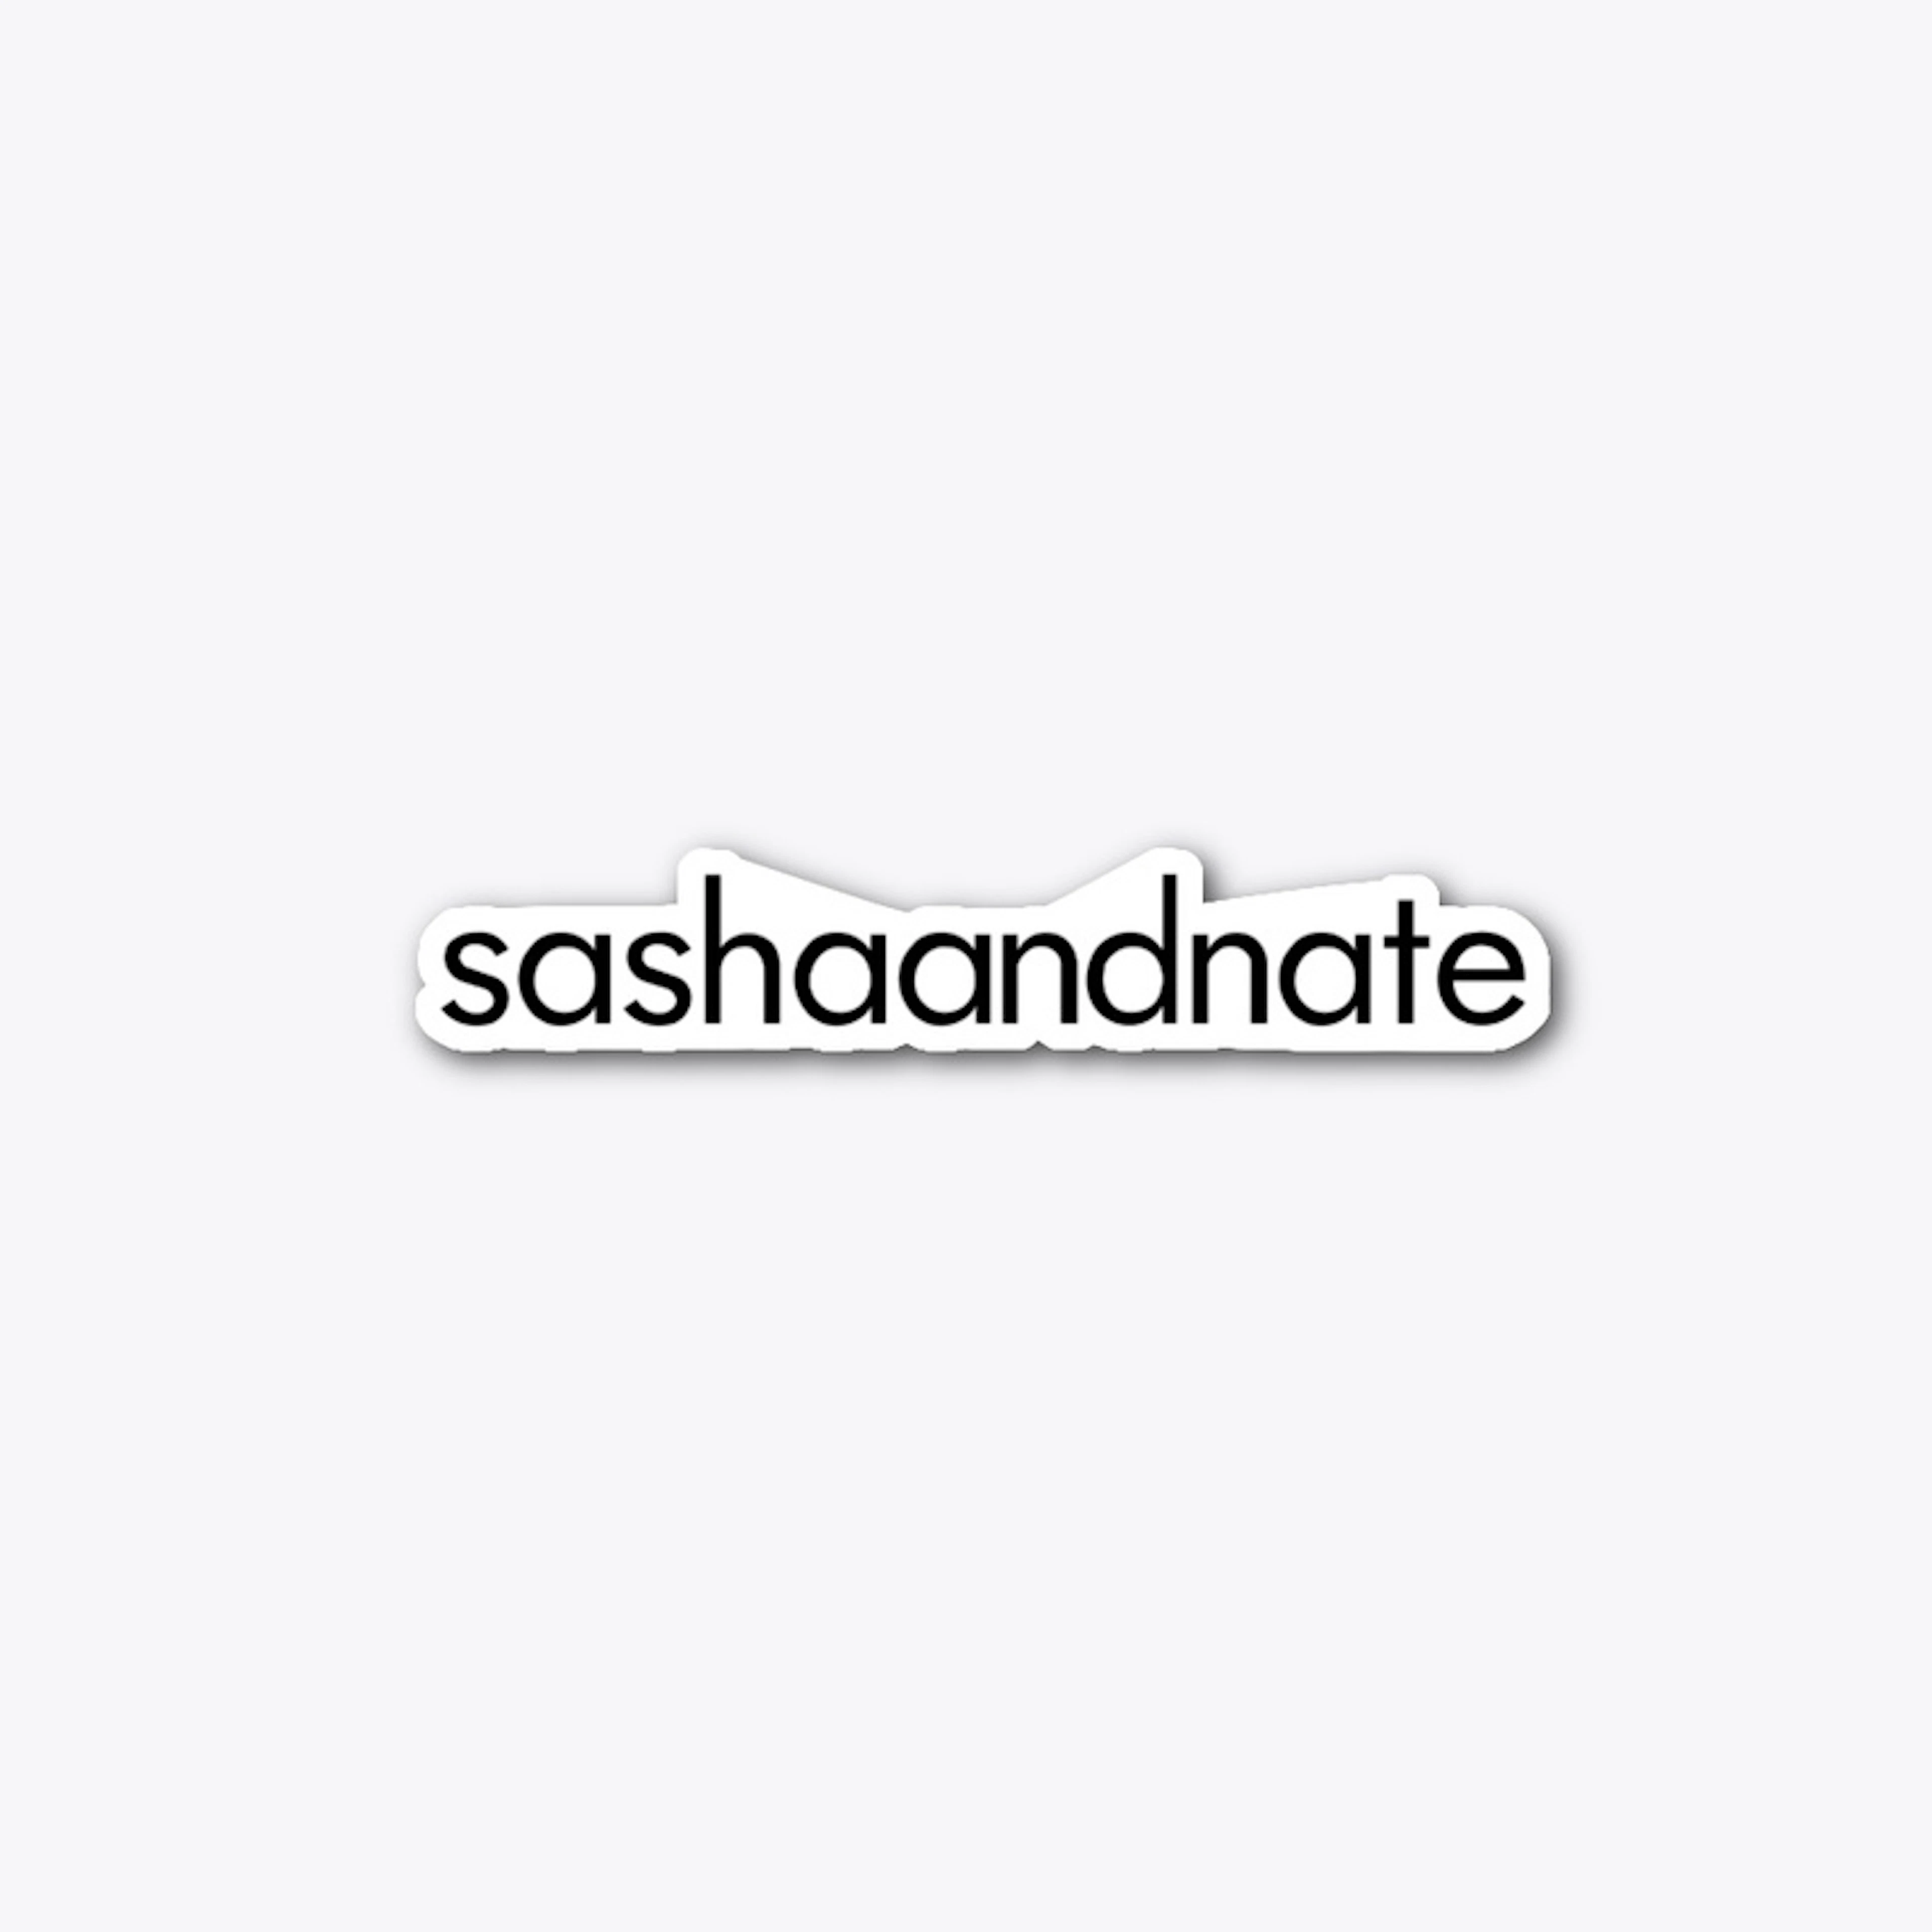 sashaandnate sticker